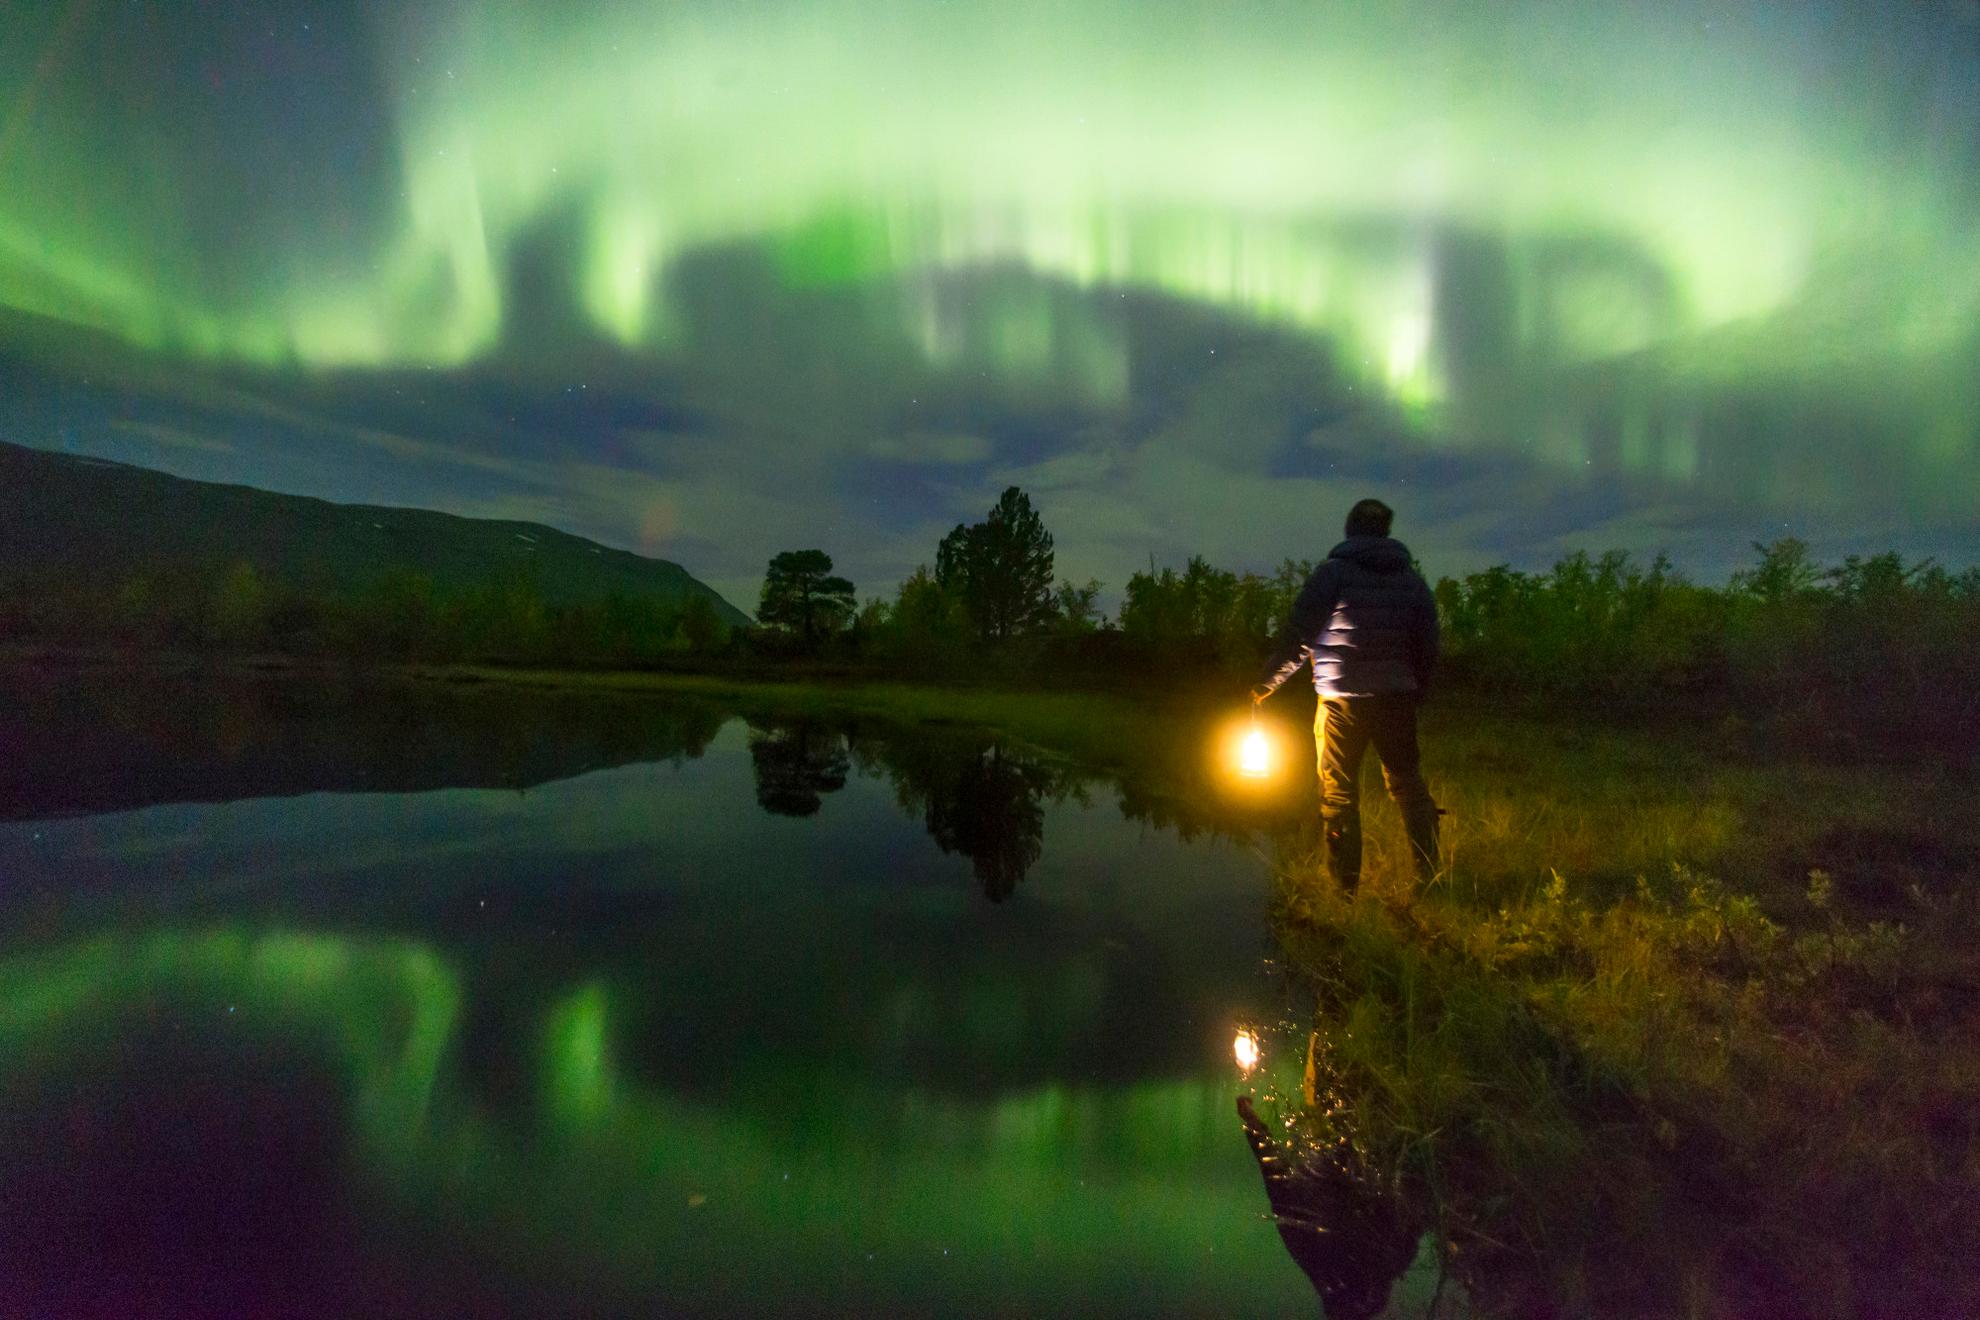 Eine Person mit einer Lampe blickt auf das grüne Nordlicht am Himmel. Die Nordlichter spiegeln sich in dem See neben der Person.